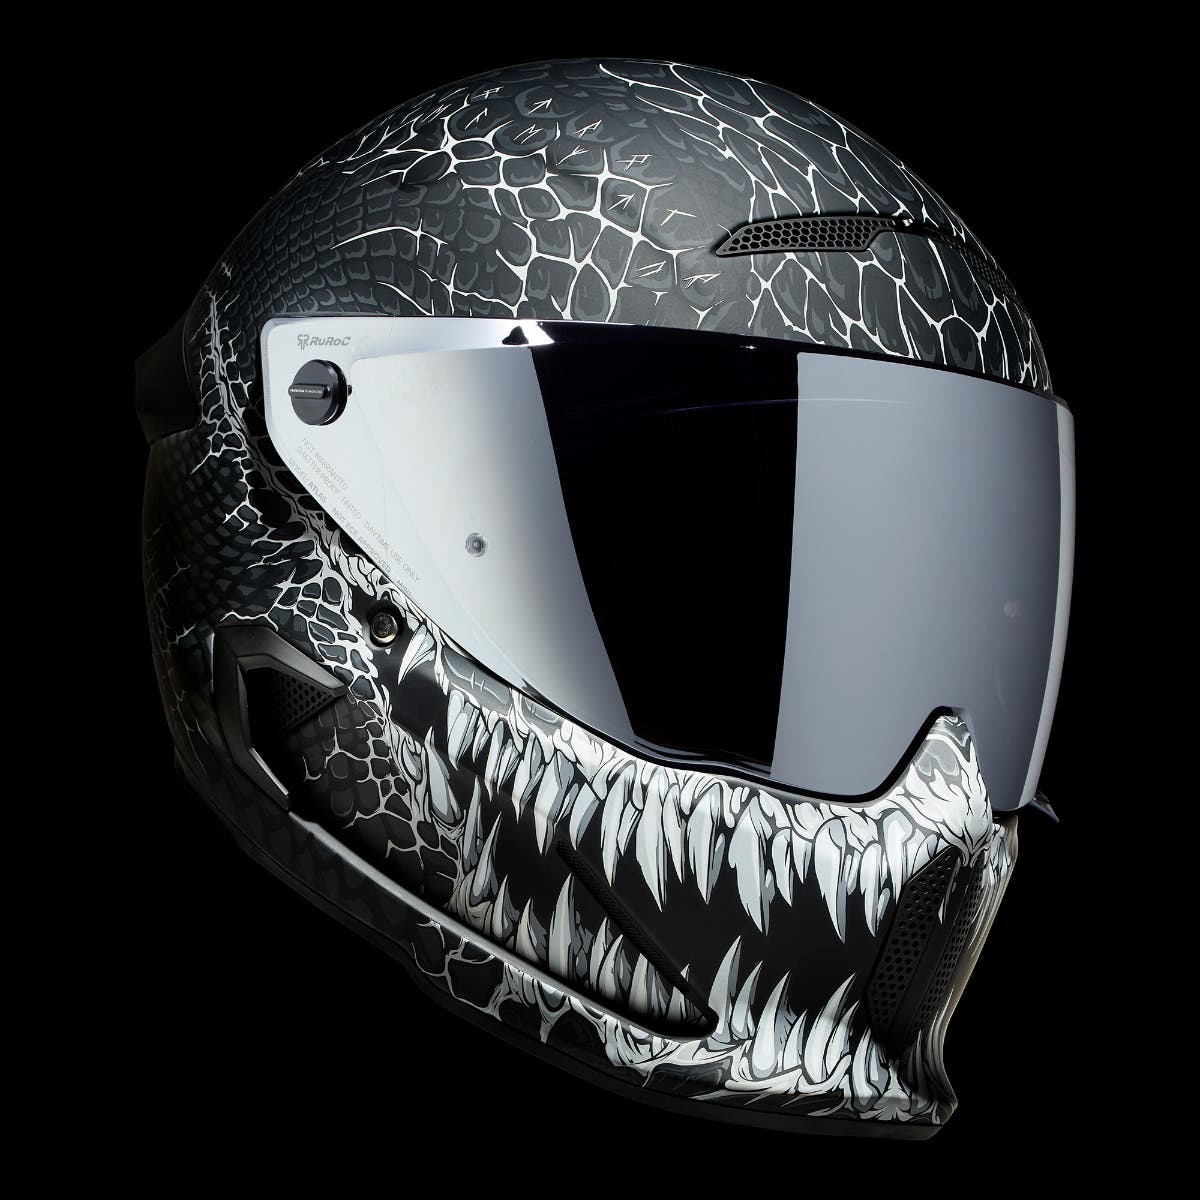 ATLAS 4.0 Jormungandr - Motorcycle Helmet - Ruroc